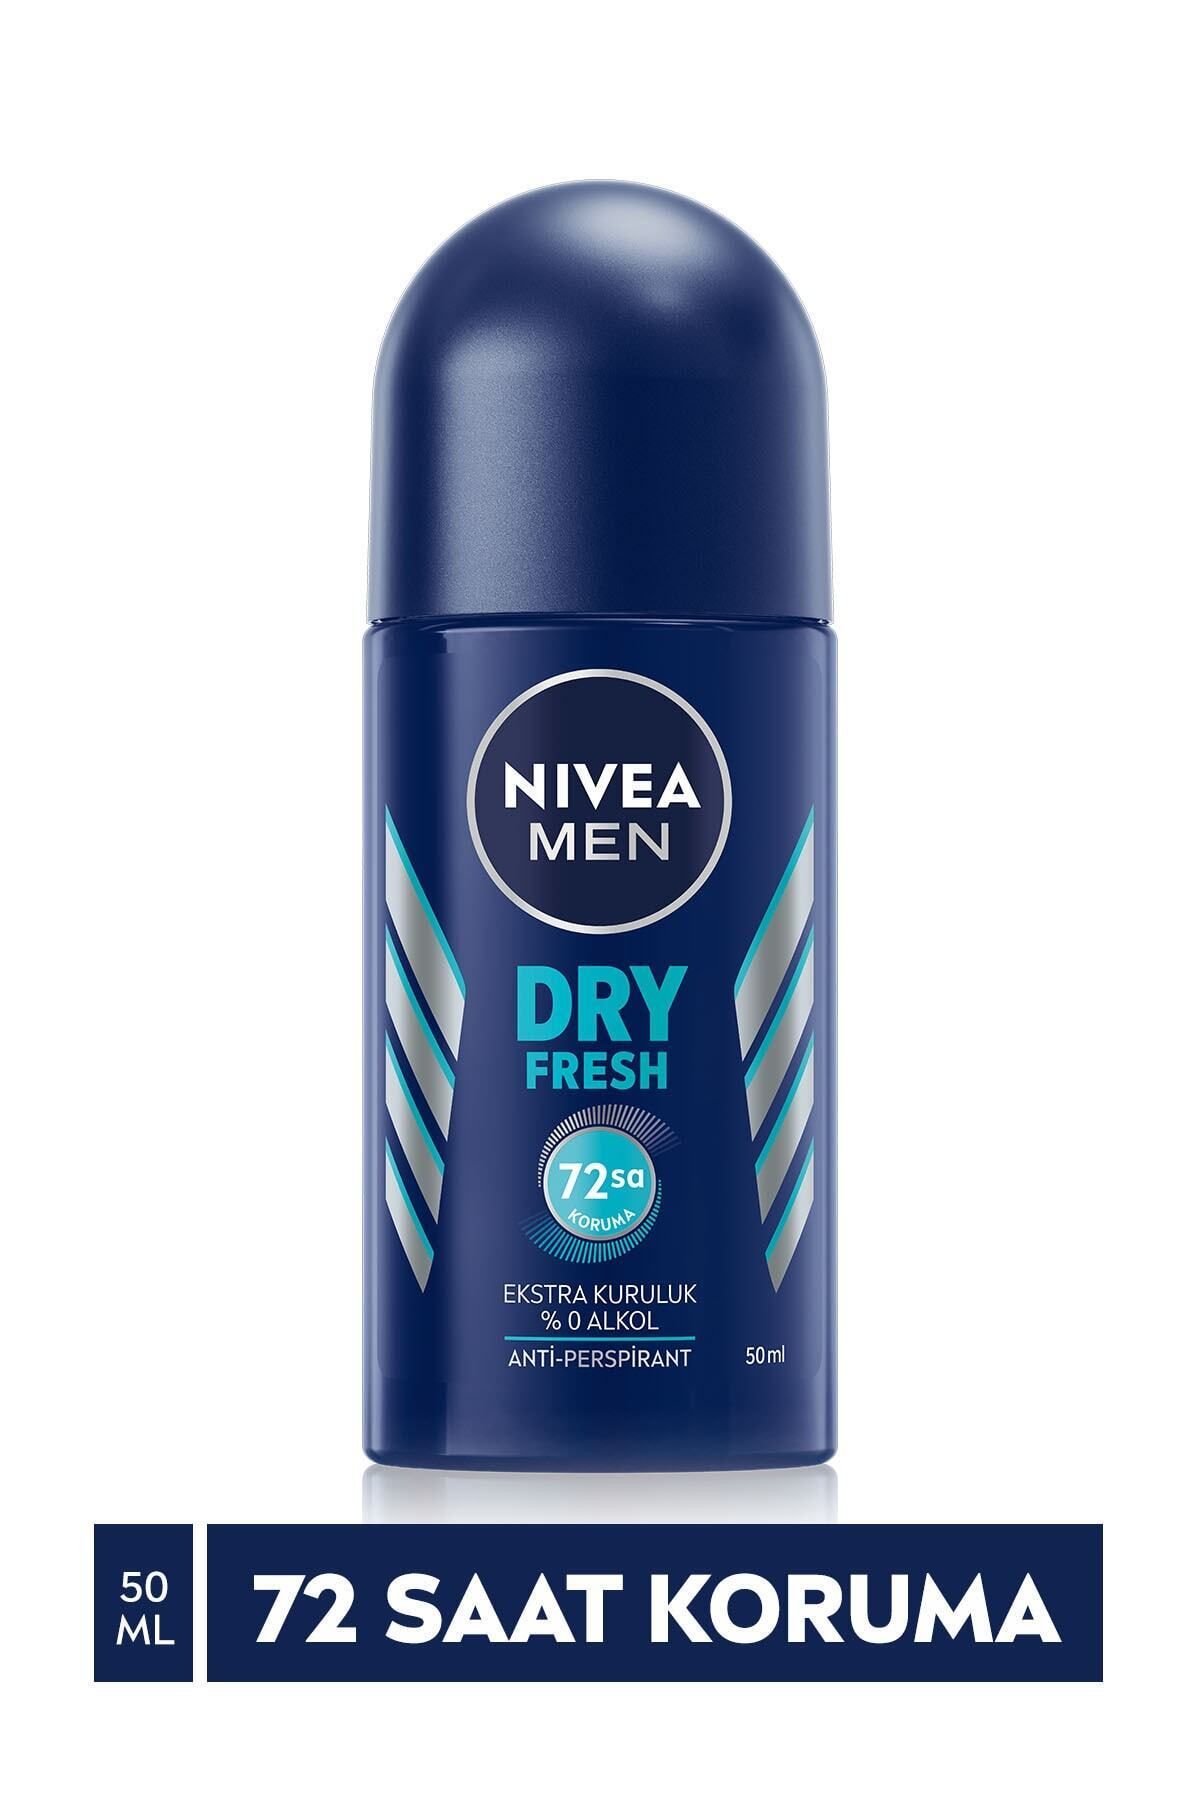 NIVEA MEN Erkek Roll-on Deodorant Dry Fresh 50 ml,72 Saat Koruma,Ekstra Kuruluk,Alkol İçermez